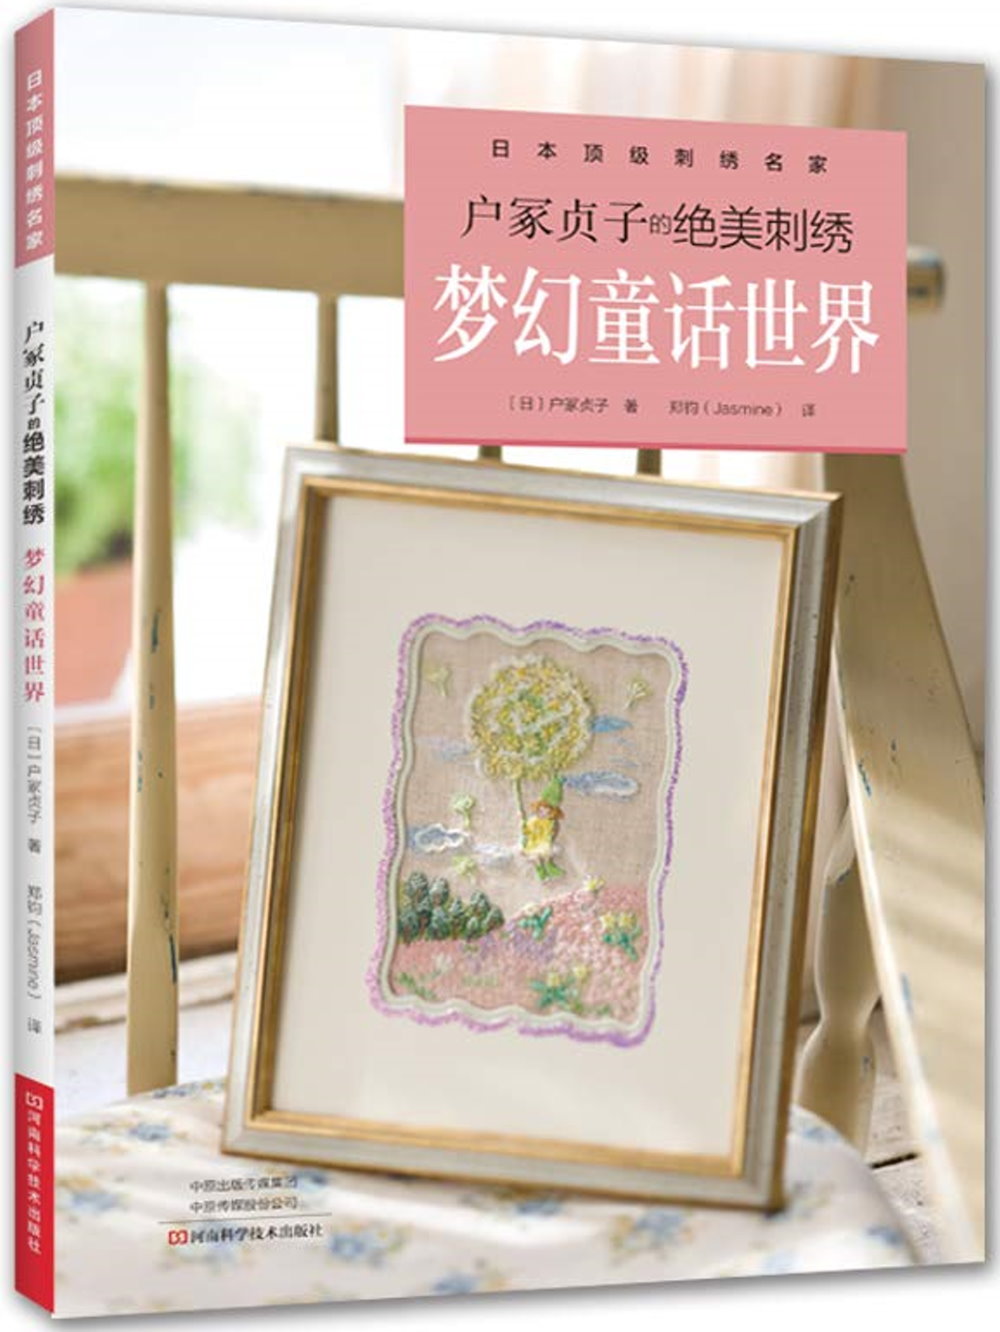 戶冢貞子的絕美刺繡：夢幻童話世界